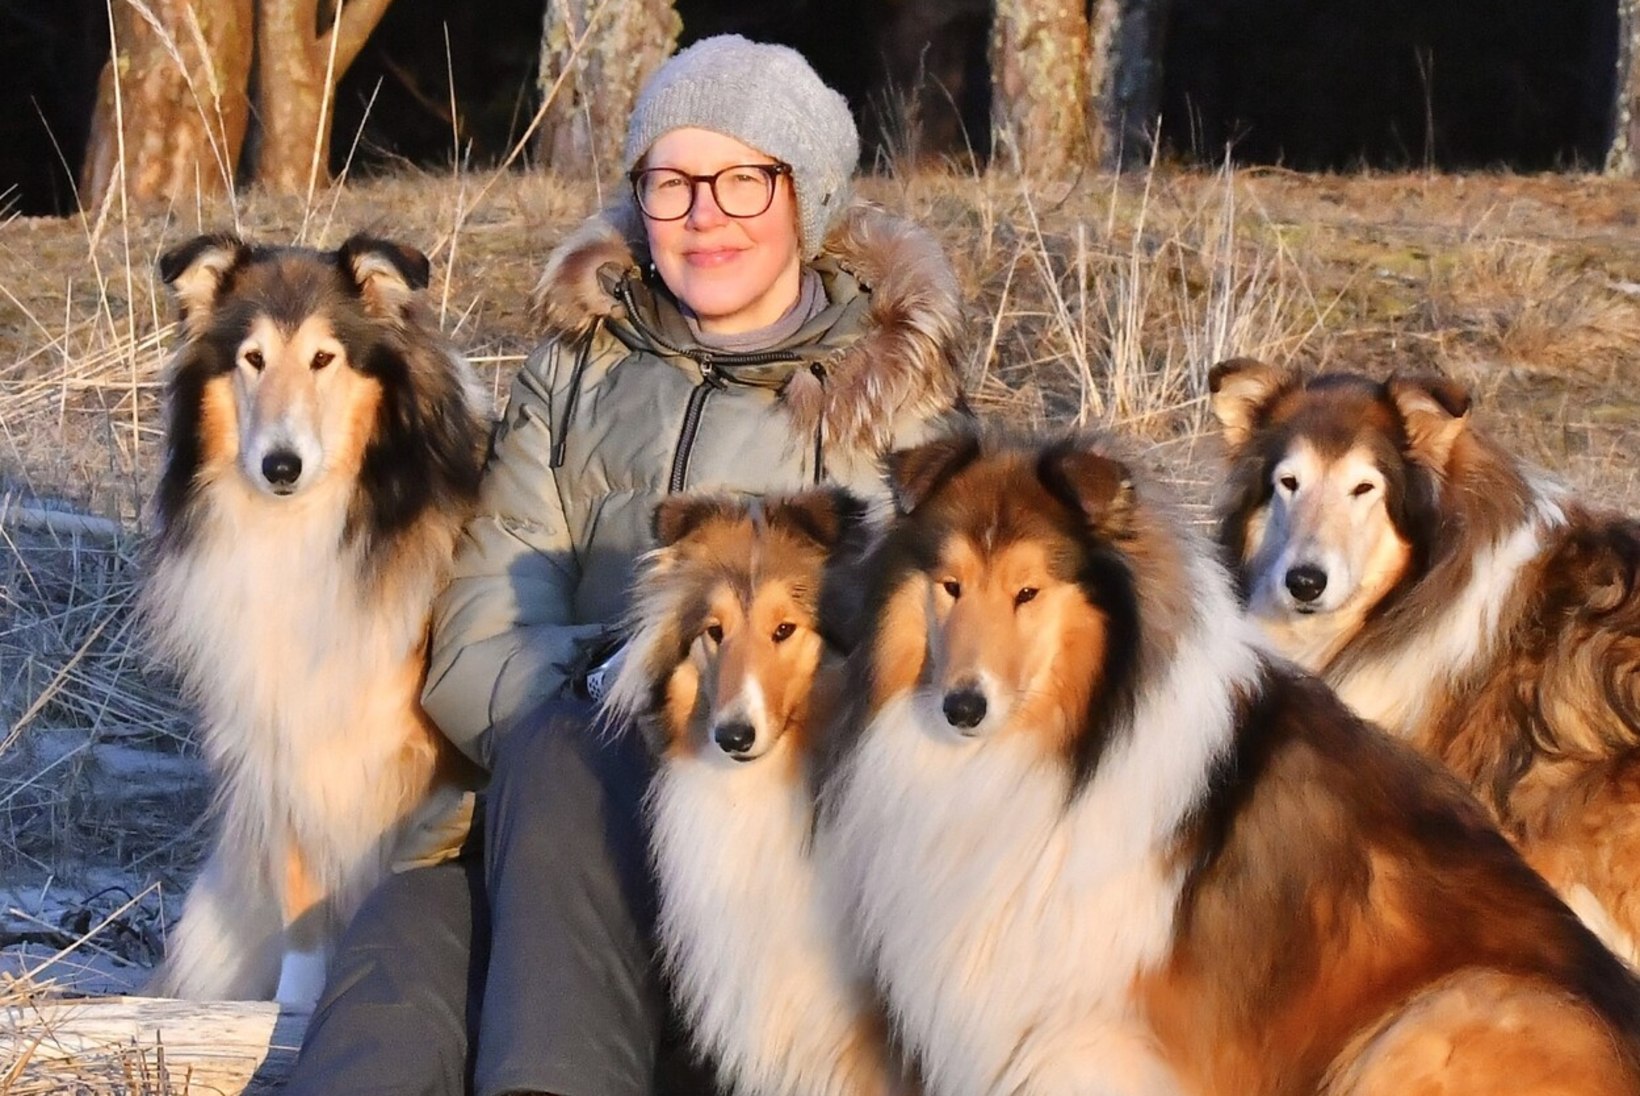 Kollikasvatajad jagavad oma kogemusi: „Ei saa võrrelda Lassie filmide peategelast ja päris koeri!“